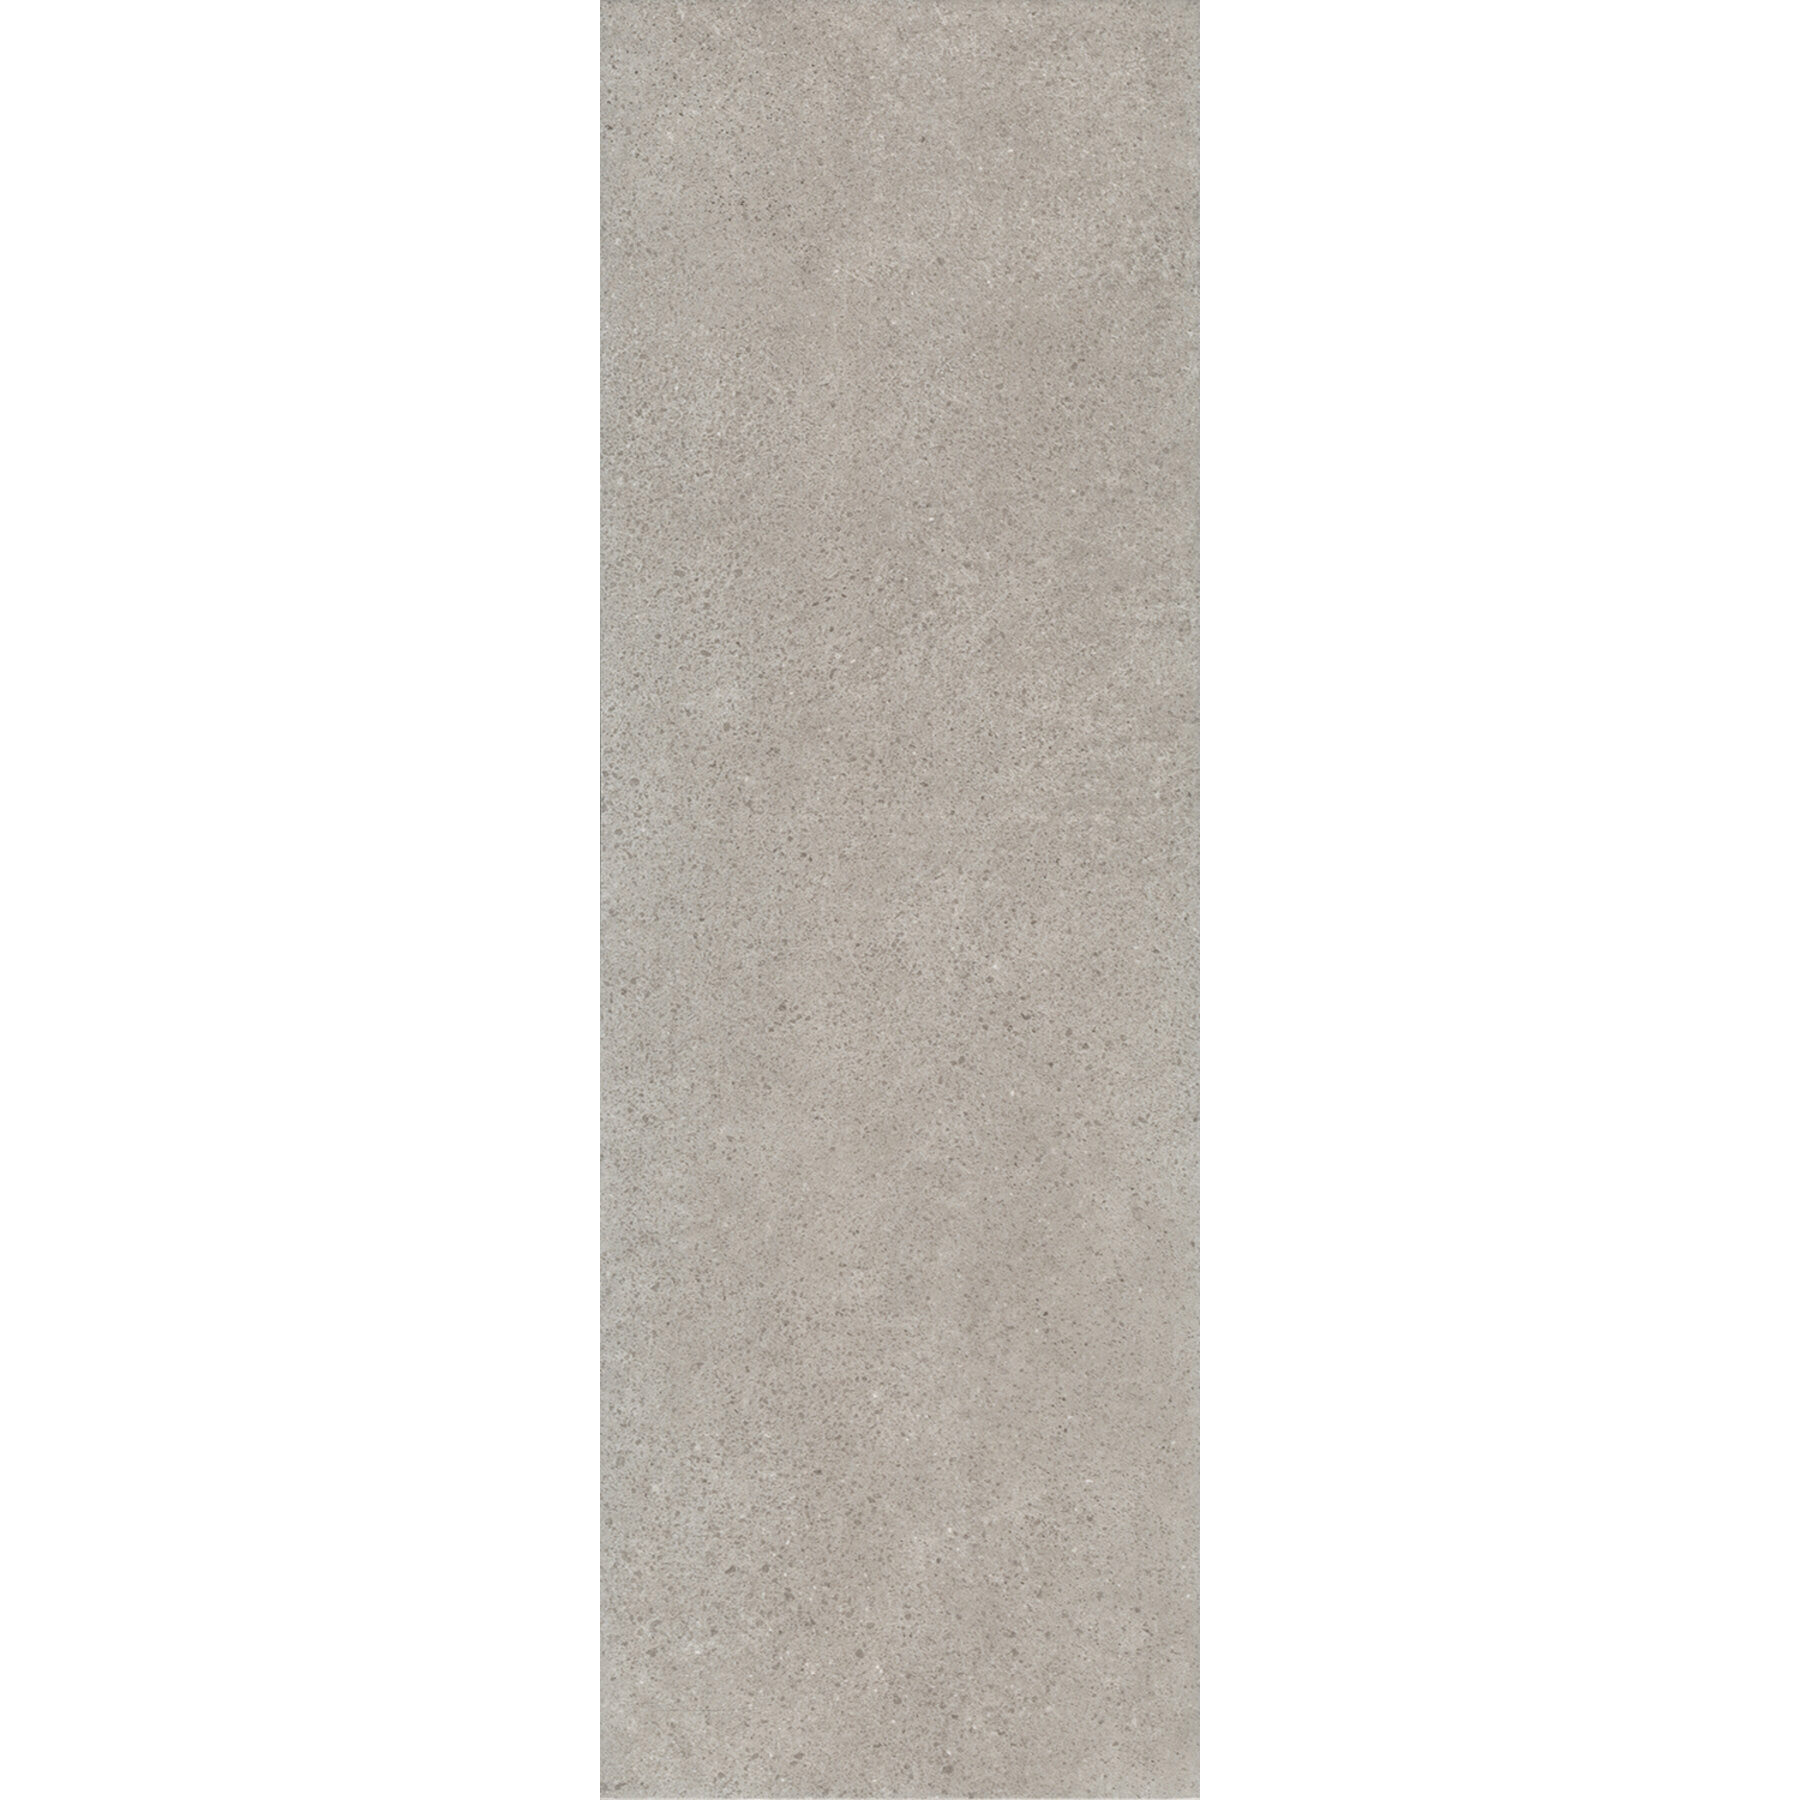 Плитка Kerama Marazzi Безана серый обрезной 12137R 25x75 см плитка керамика императорский кирпич ложок серый 25 8х7 6 см